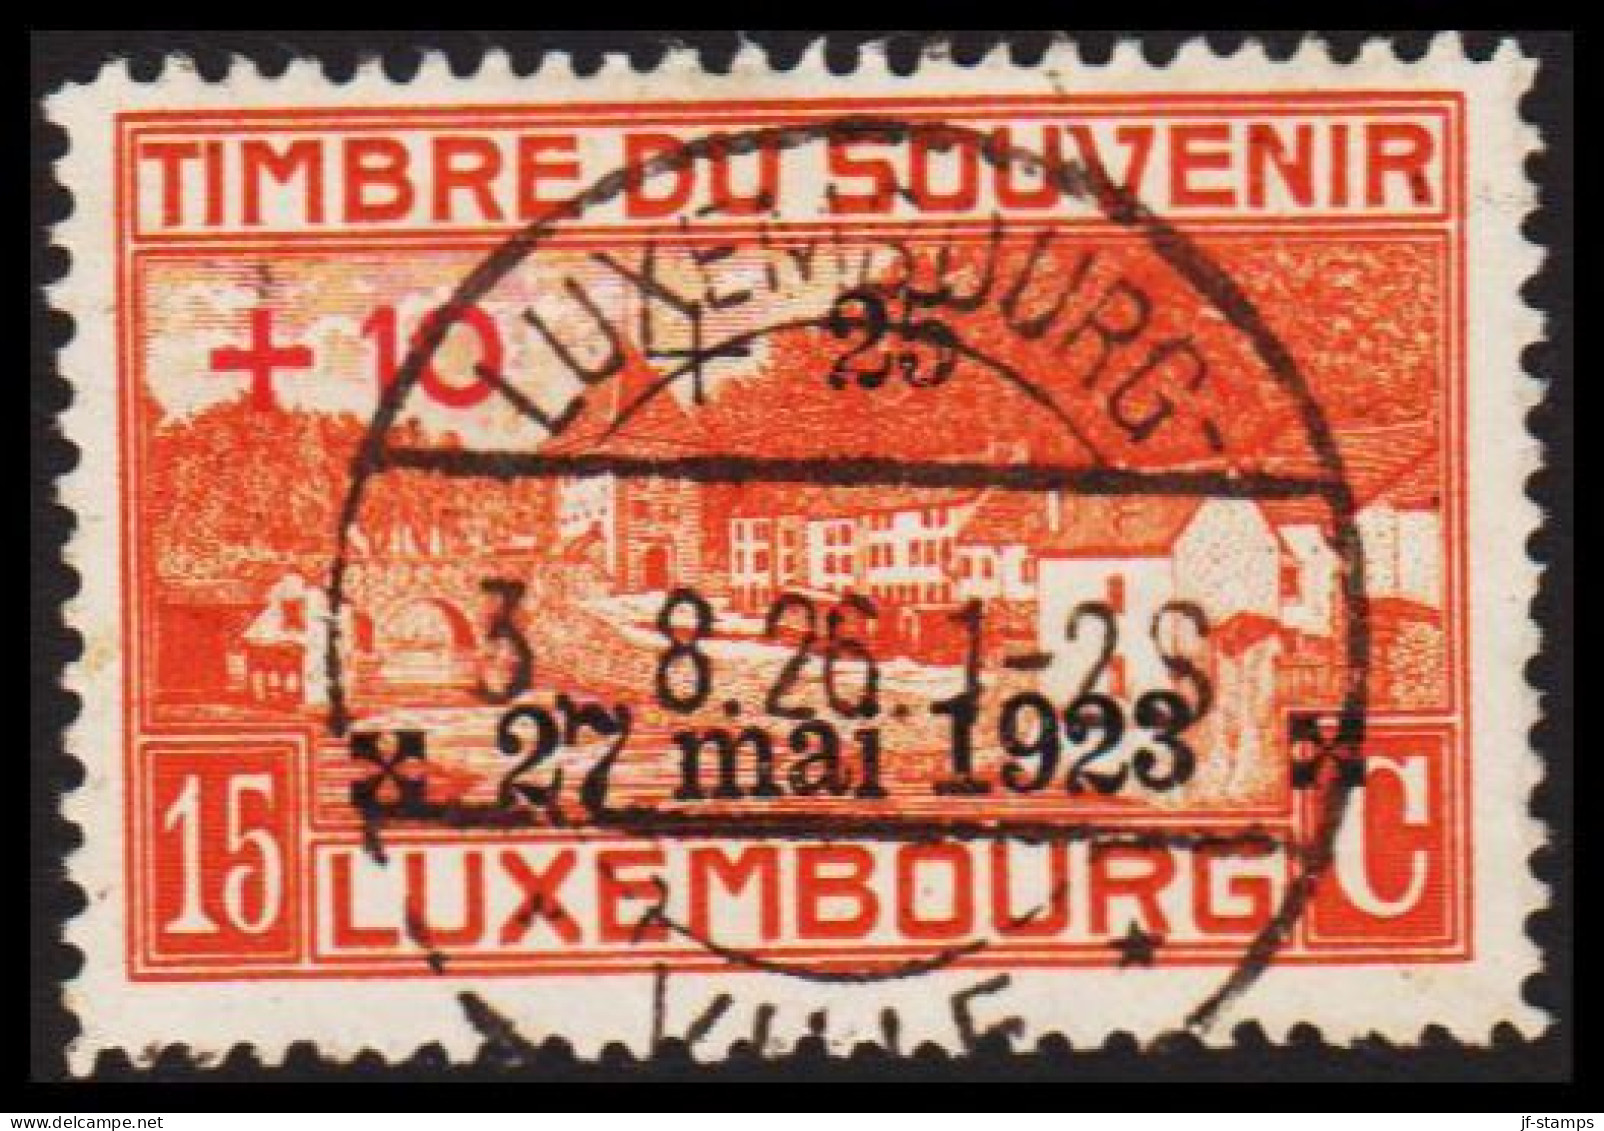 1923. LUXEMBOURG. TIMBRE DE SOUVENIR 15 C Overprinted +10 + 25 27 Mai 1923. Luxus Cancelled L... (Michel 145) - JF532654 - Oblitérés